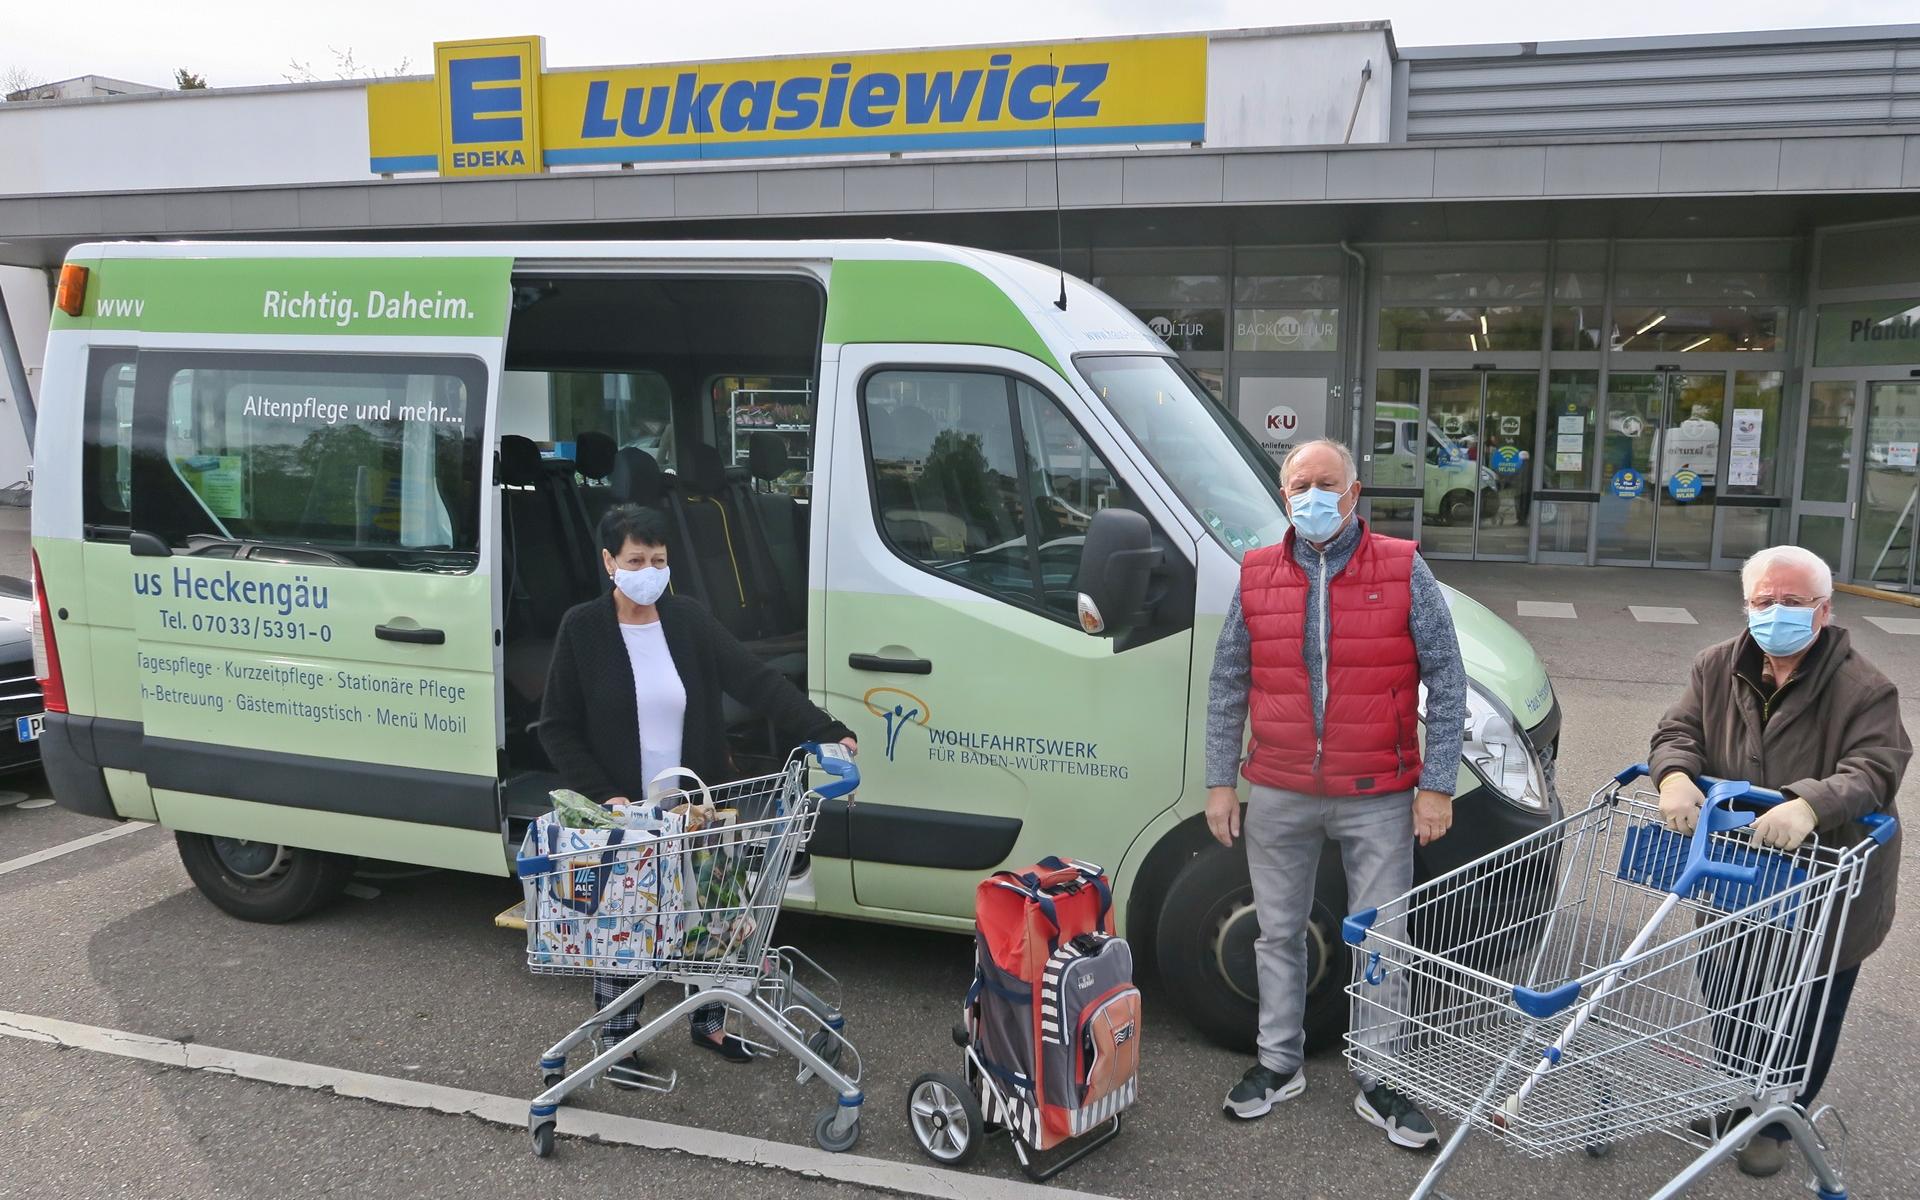 Begleitetes einkaufen für Seniorenin der Stadt heimsheim - Sprinter mit 3 Personen im Vordergrund